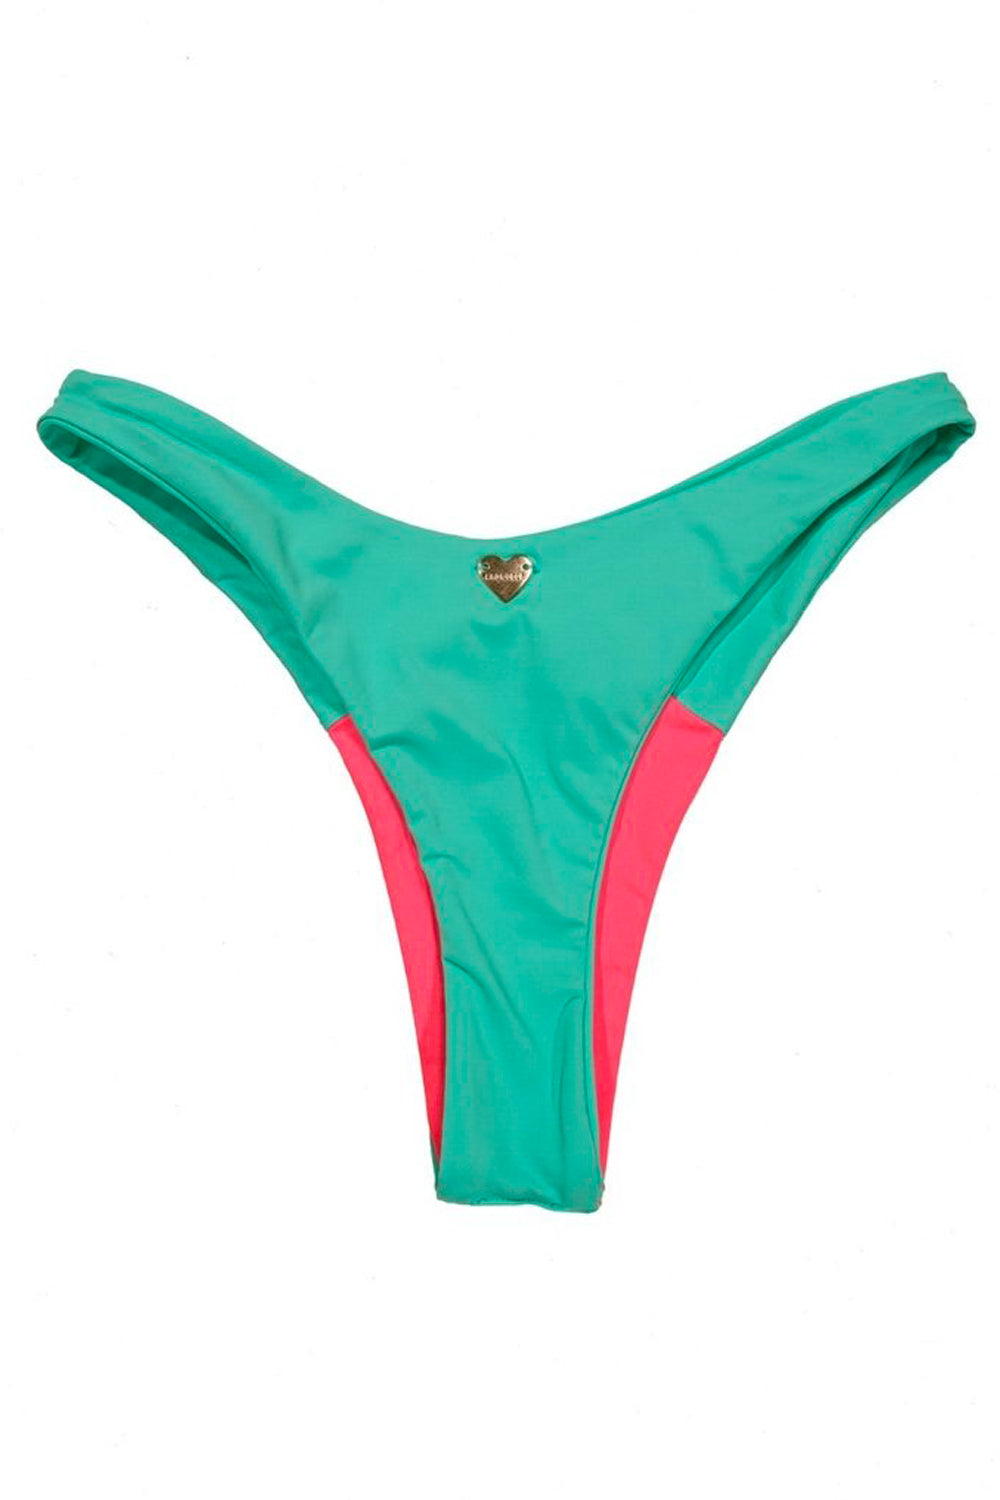 Neon Pink & Turquoise Bikini Bottoms - Madallola